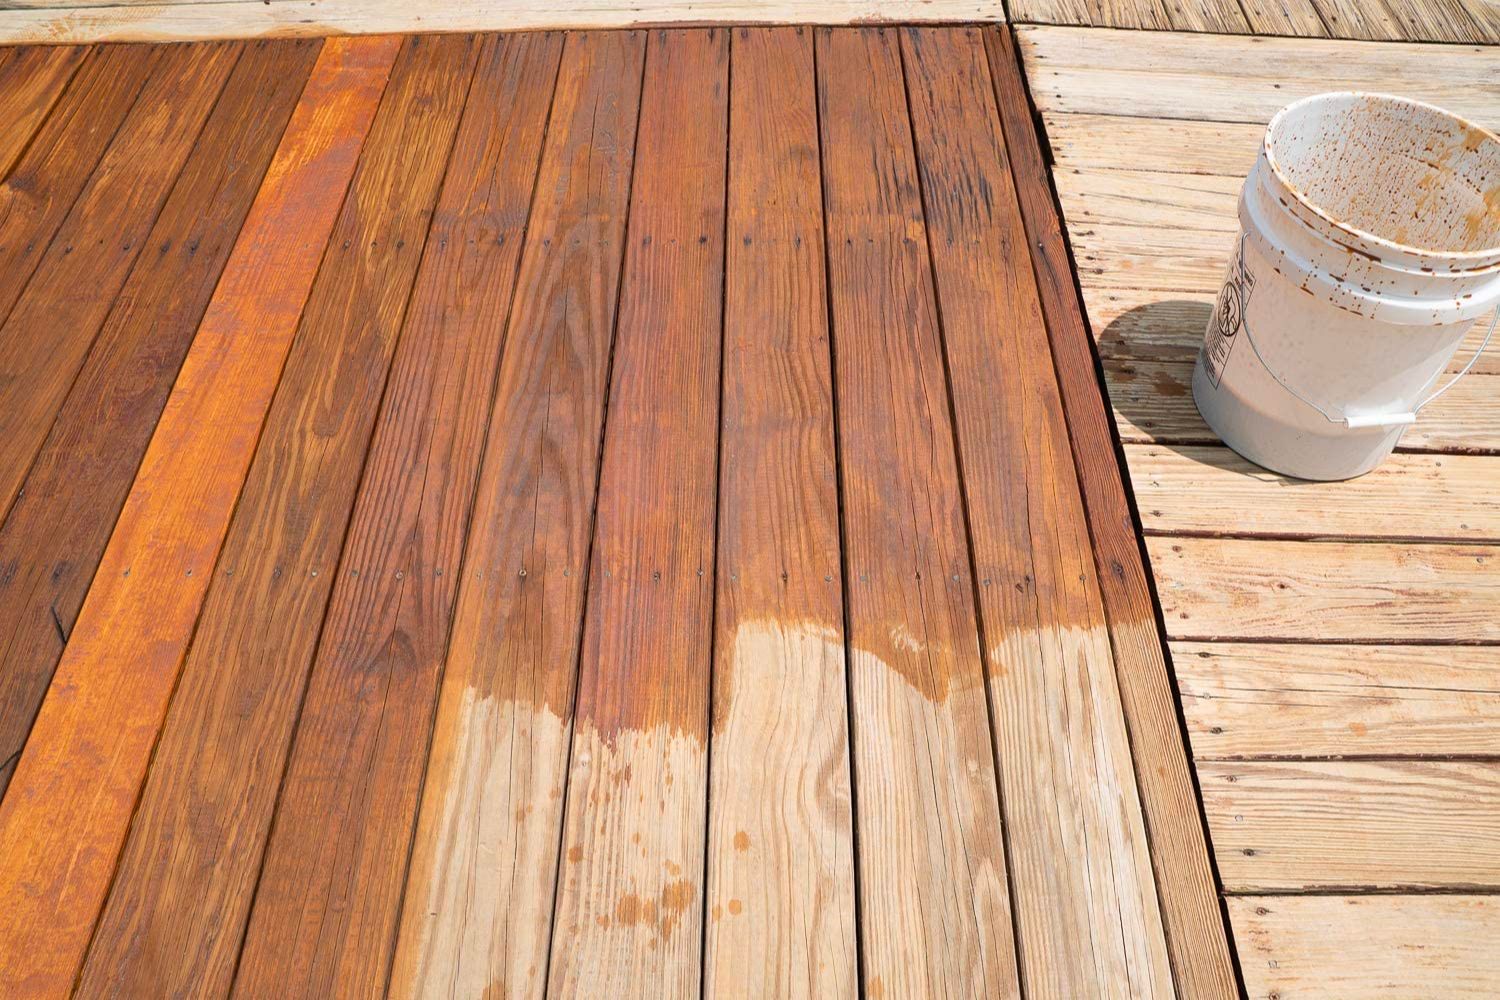 The Best Outdoor Wood Sealer Options